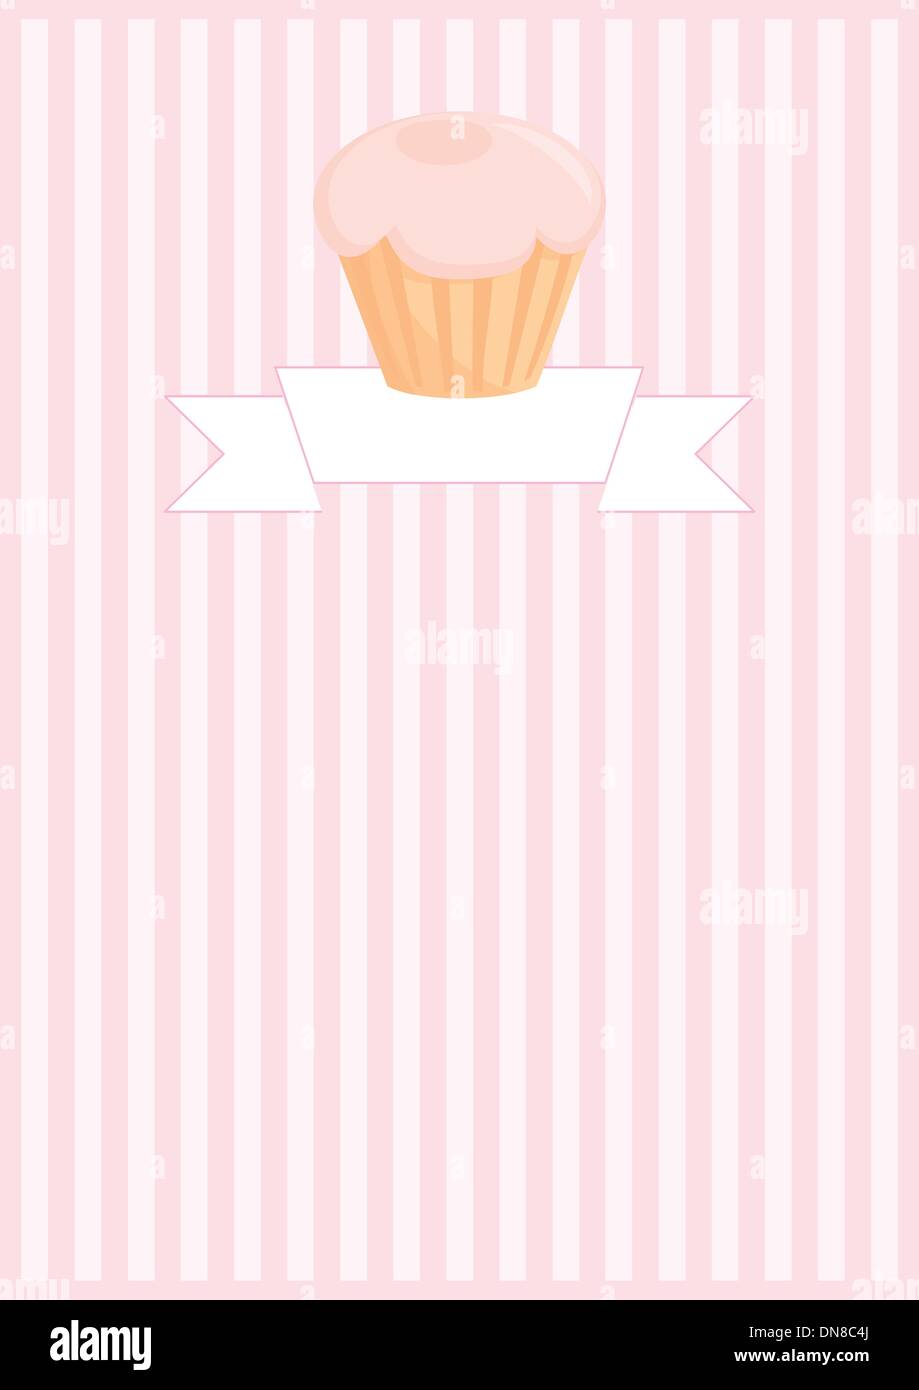 Restaurant menu bouton vecteur de mariage ou liste de carte d'invitation de douche de bébé rose cupcake sur le motif ou post texture background Illustration de Vecteur